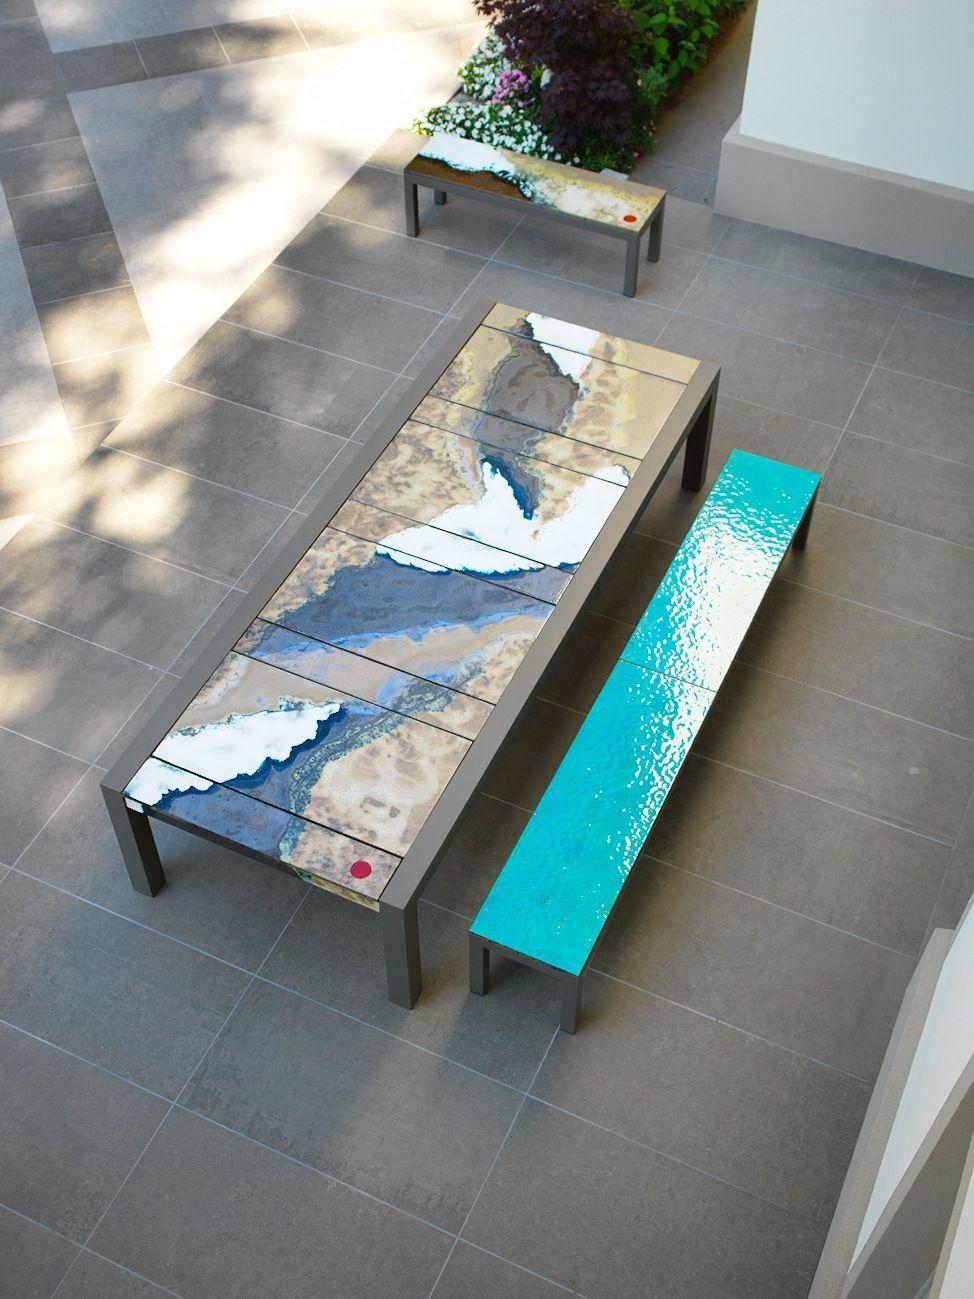 Lavastein Einzigartige Tische:
Glasiertes Lavagestein ist ein Basaltlava-Produkt mit Majolika-Verzierungen auf der Oberfläche. Da das Wort 